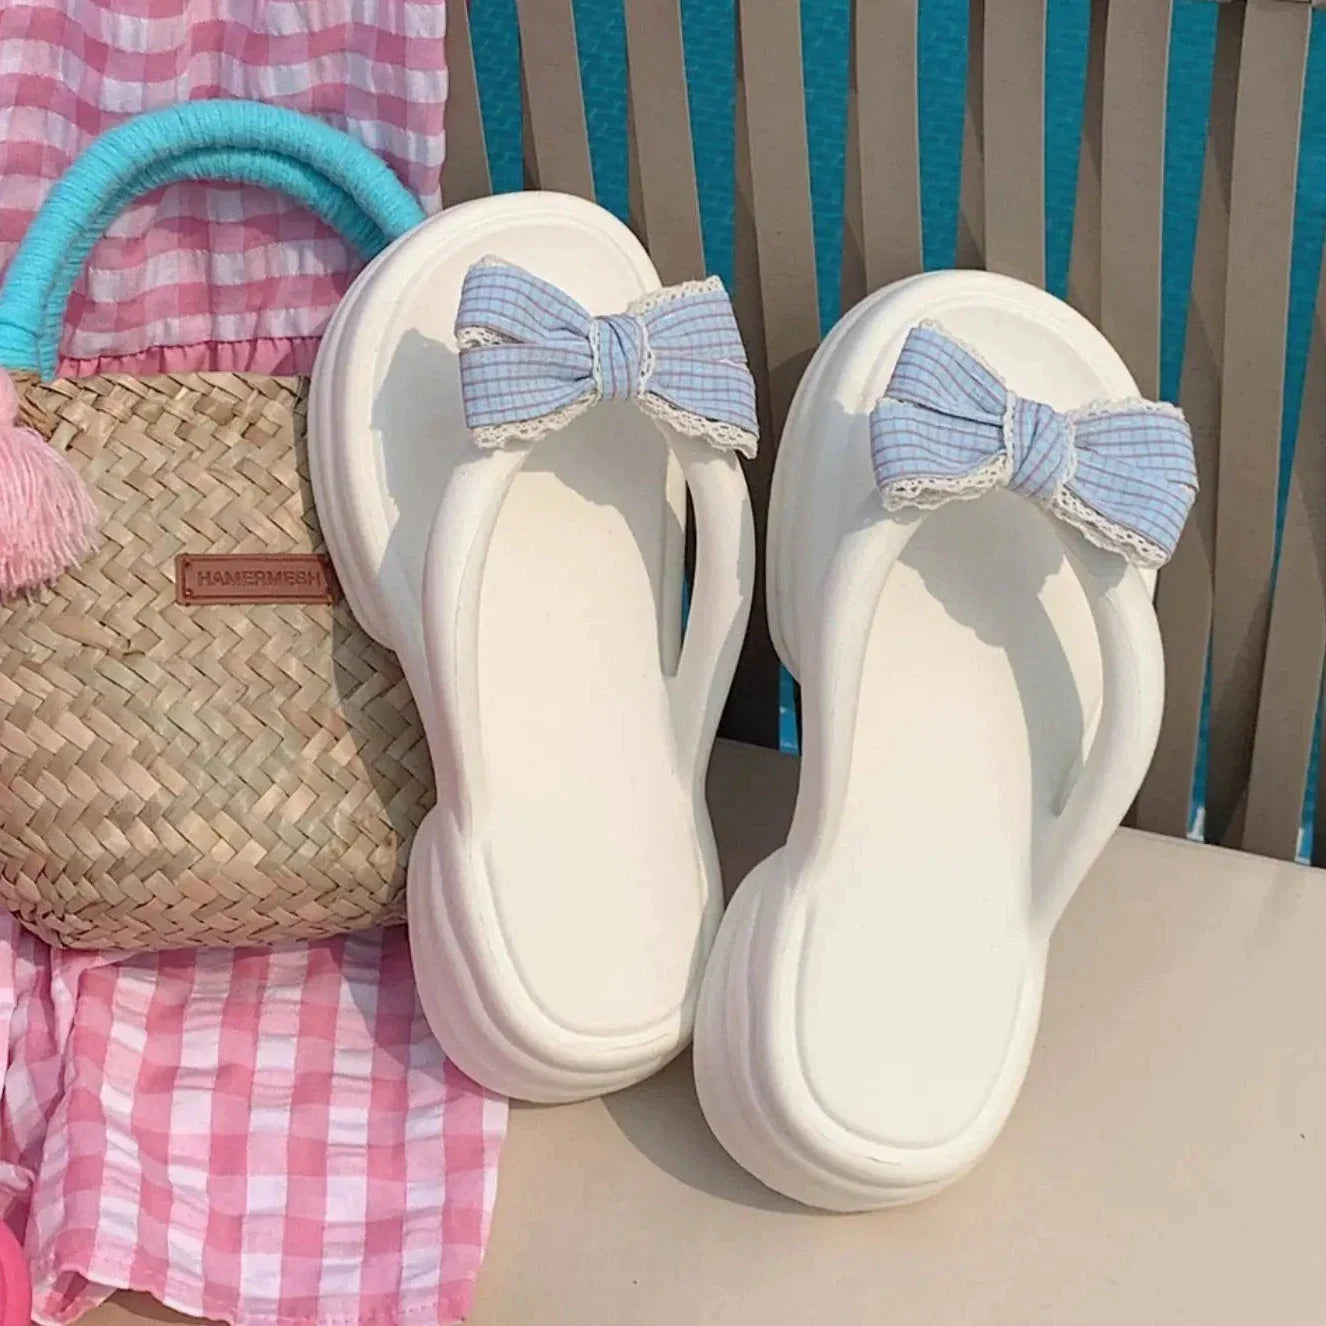 Cute Bow Beach Sandals